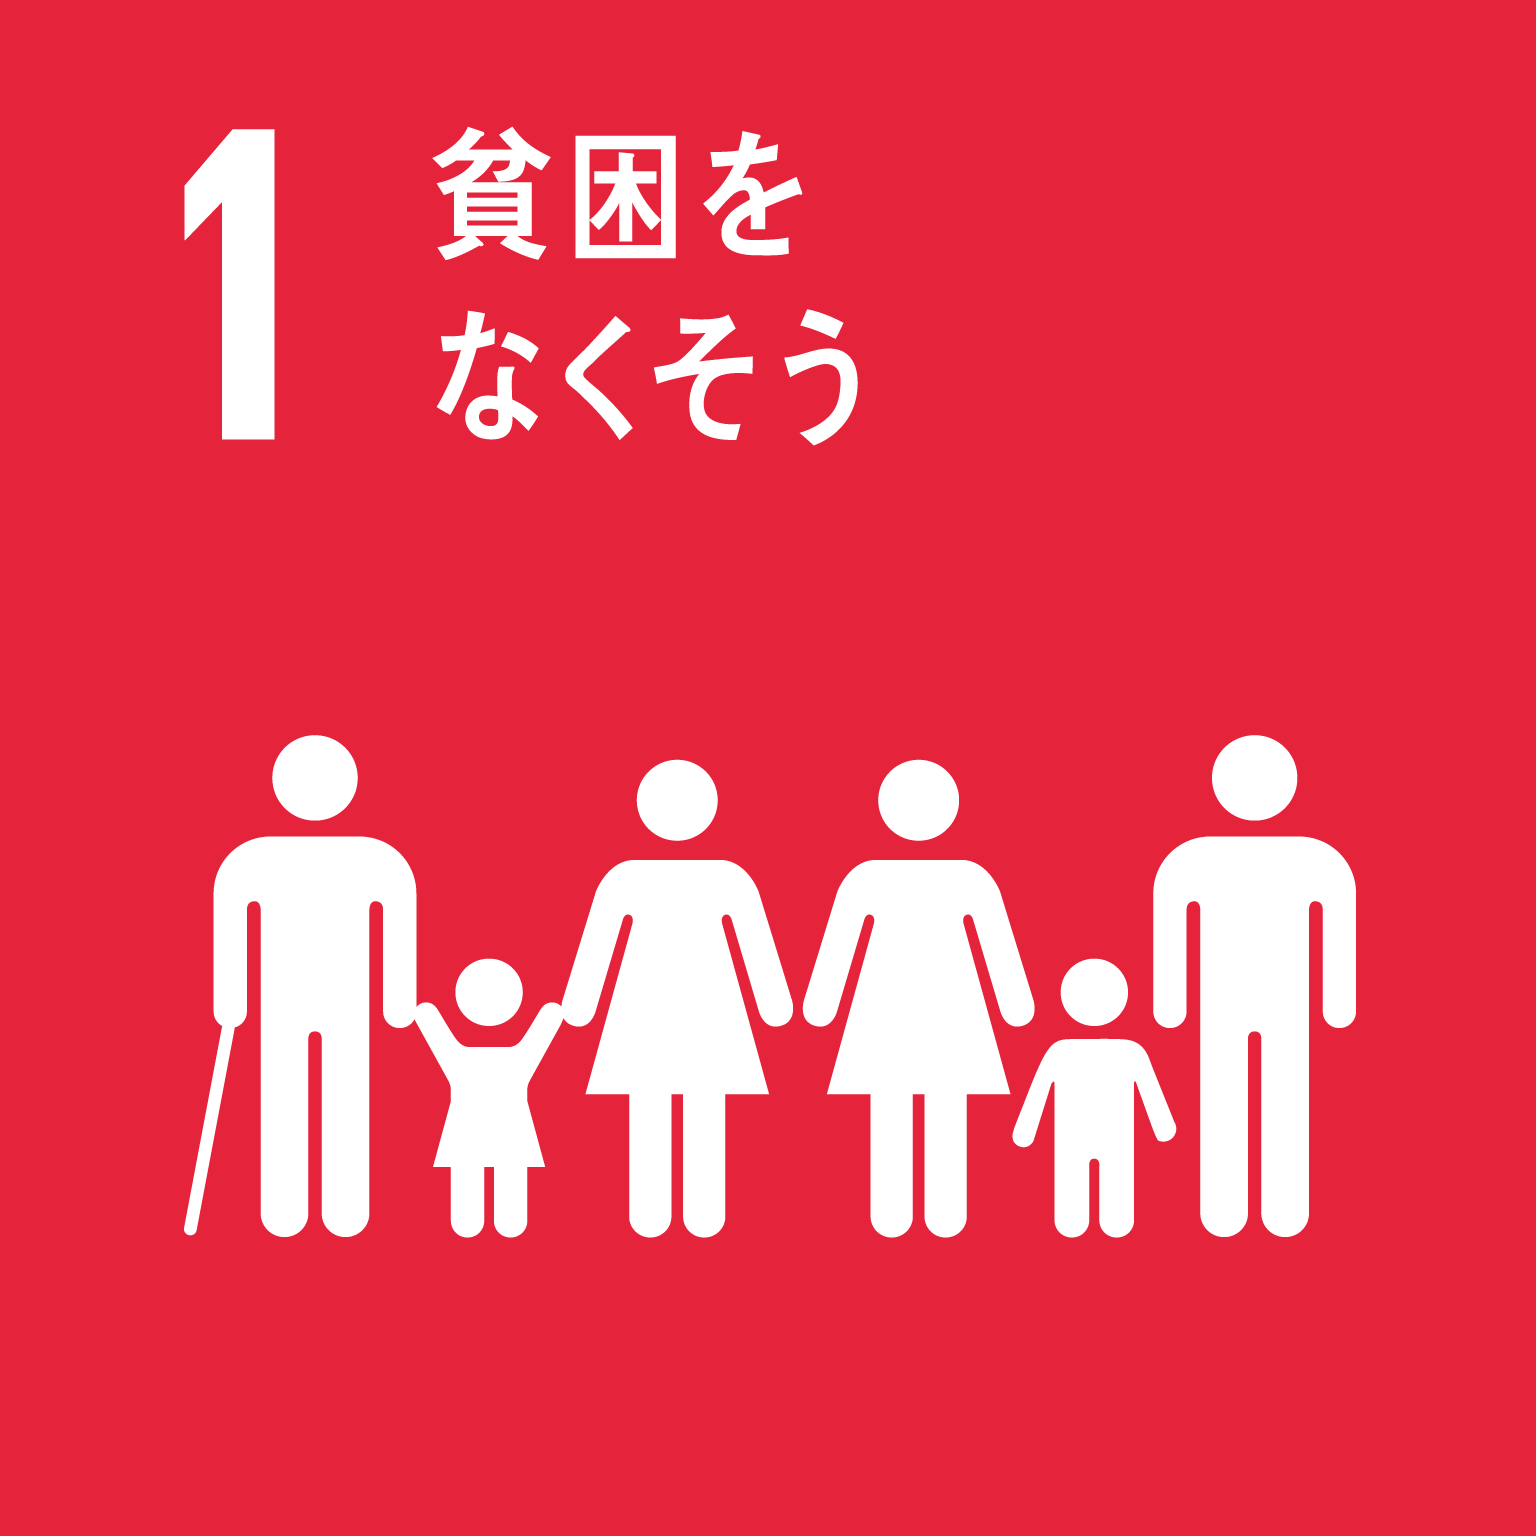 「1.貧困をなくそう」の文字と目標1のロゴ